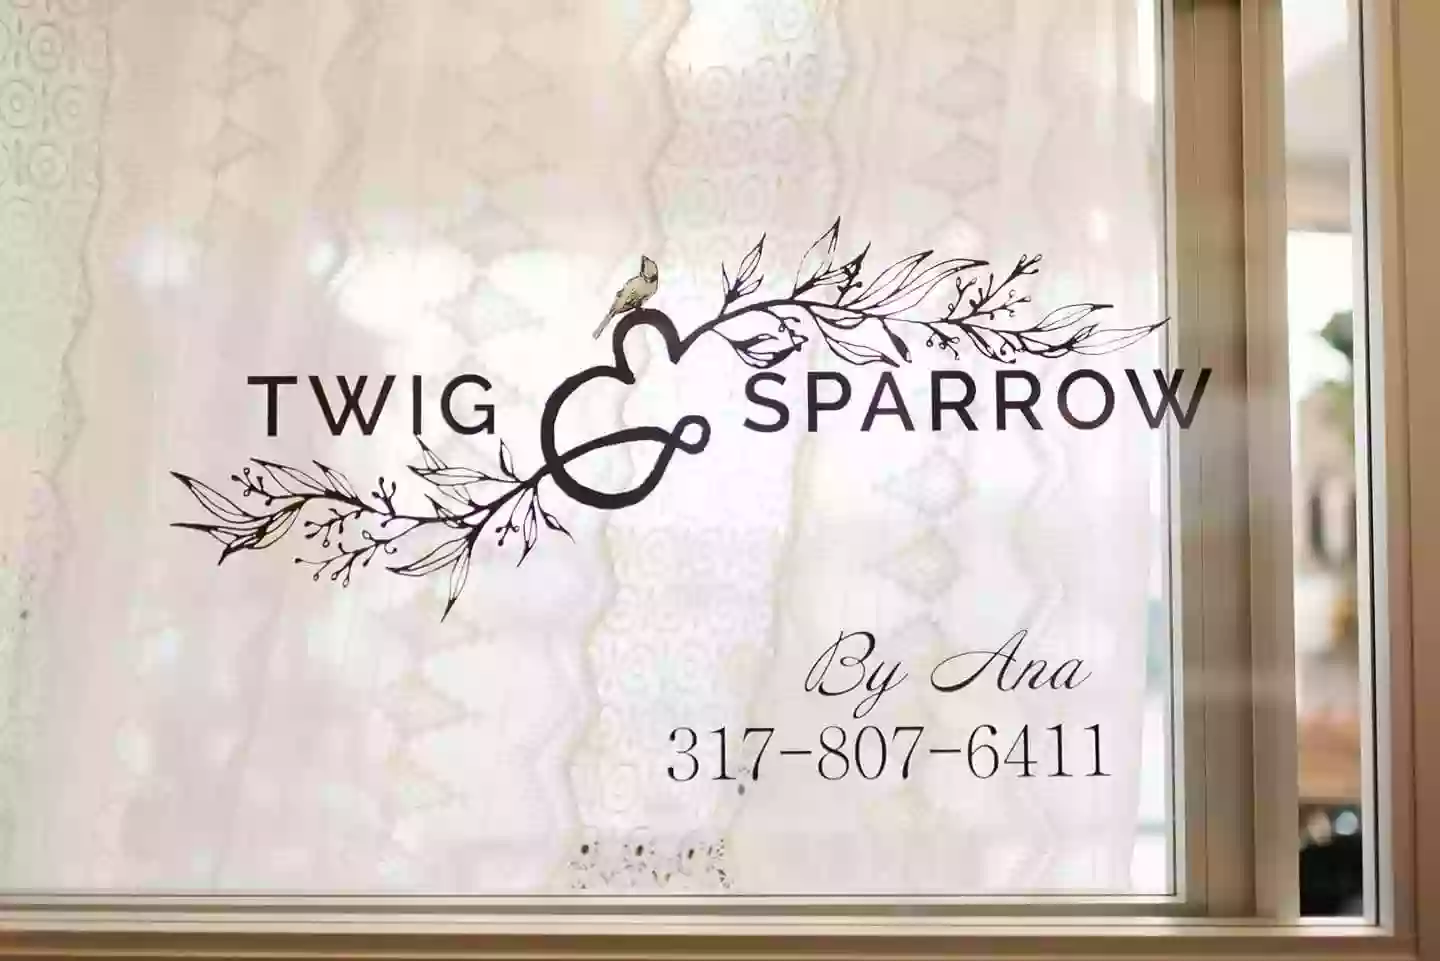 Twig & Sparrow Salon